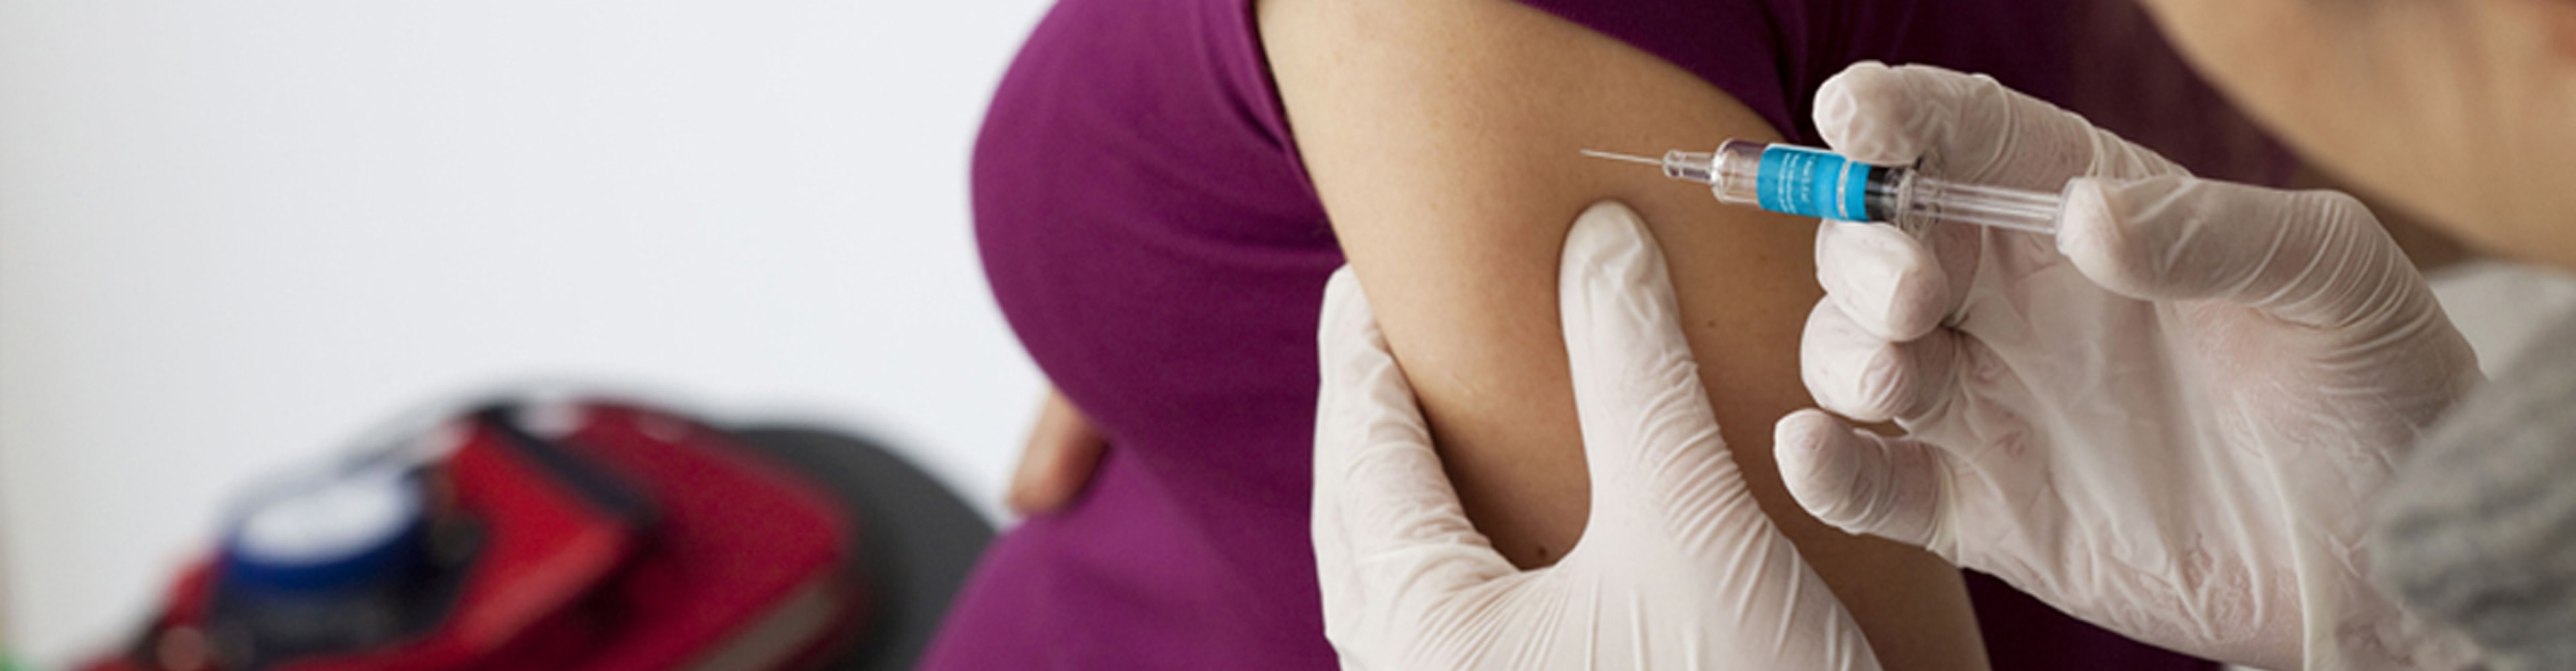 Ce qu’il faut savoir sur les vaccins pendant la grossesse